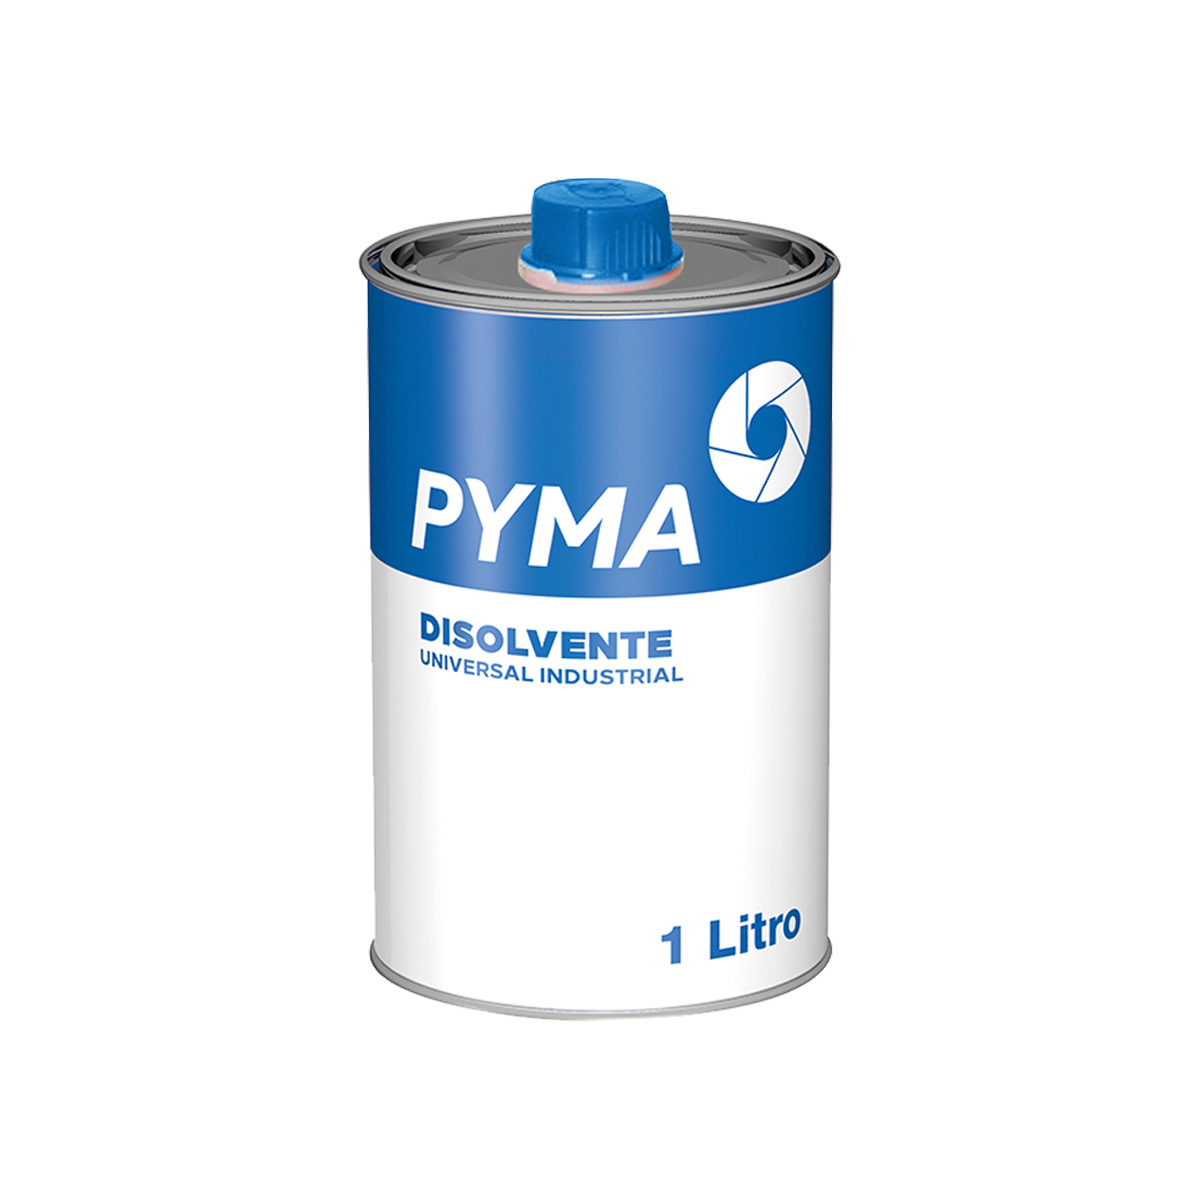 Disolvente Universal Pyma 1 Litro - Miguel Lopez Martos